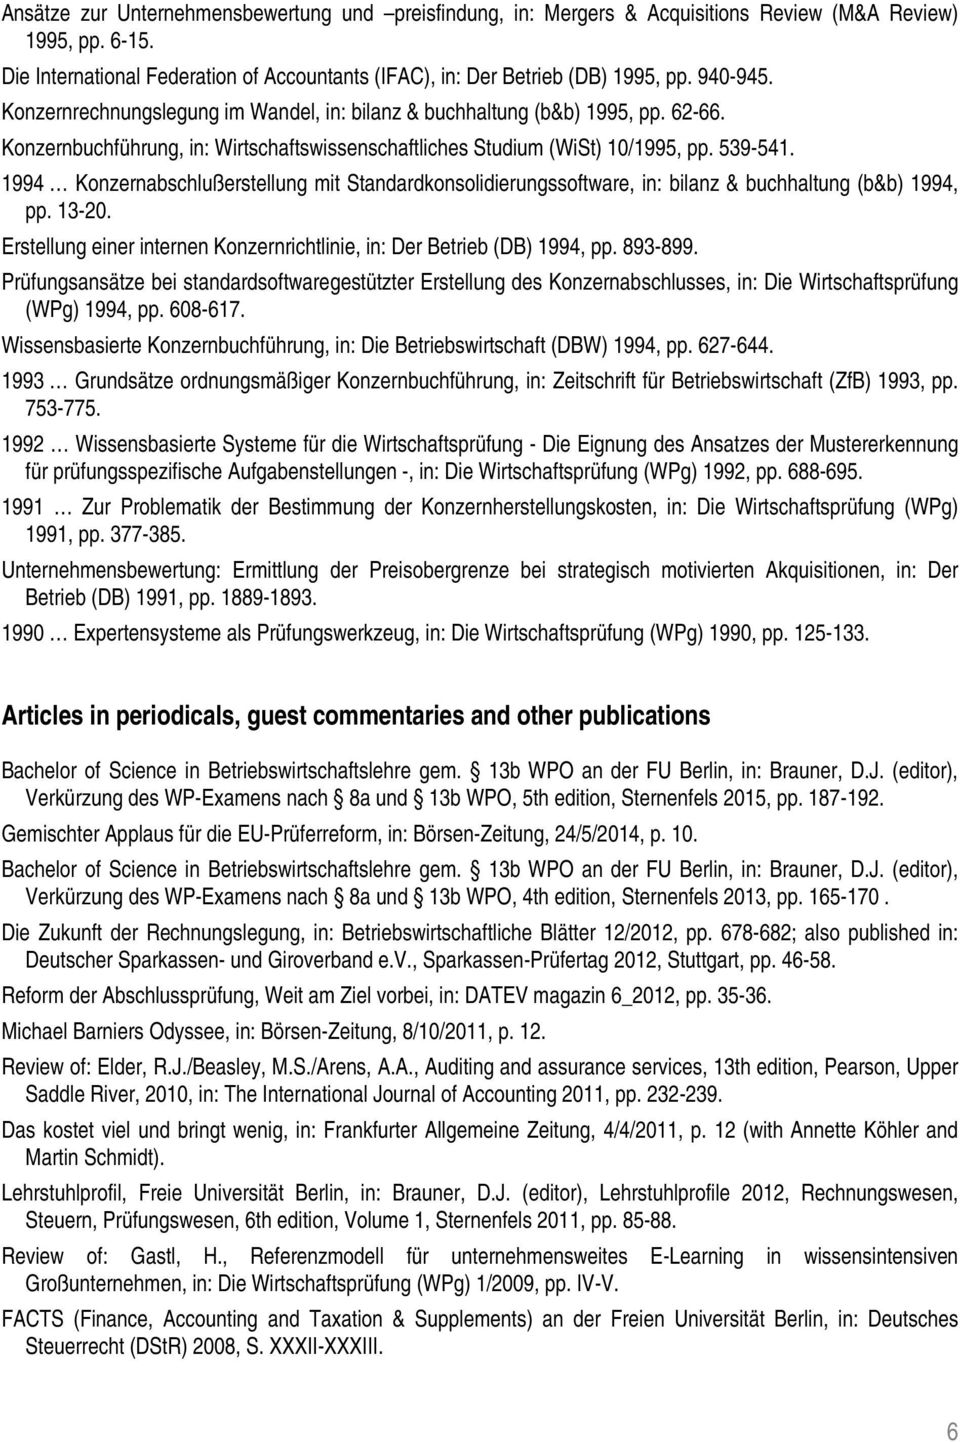 1994 Konzernabschlußerstellung mit Standardkonsolidierungssoftware, in: bilanz & buchhaltung (b&b) 1994, pp. 13-20. Erstellung einer internen Konzernrichtlinie, in: Der Betrieb (DB) 1994, pp. 893-899.